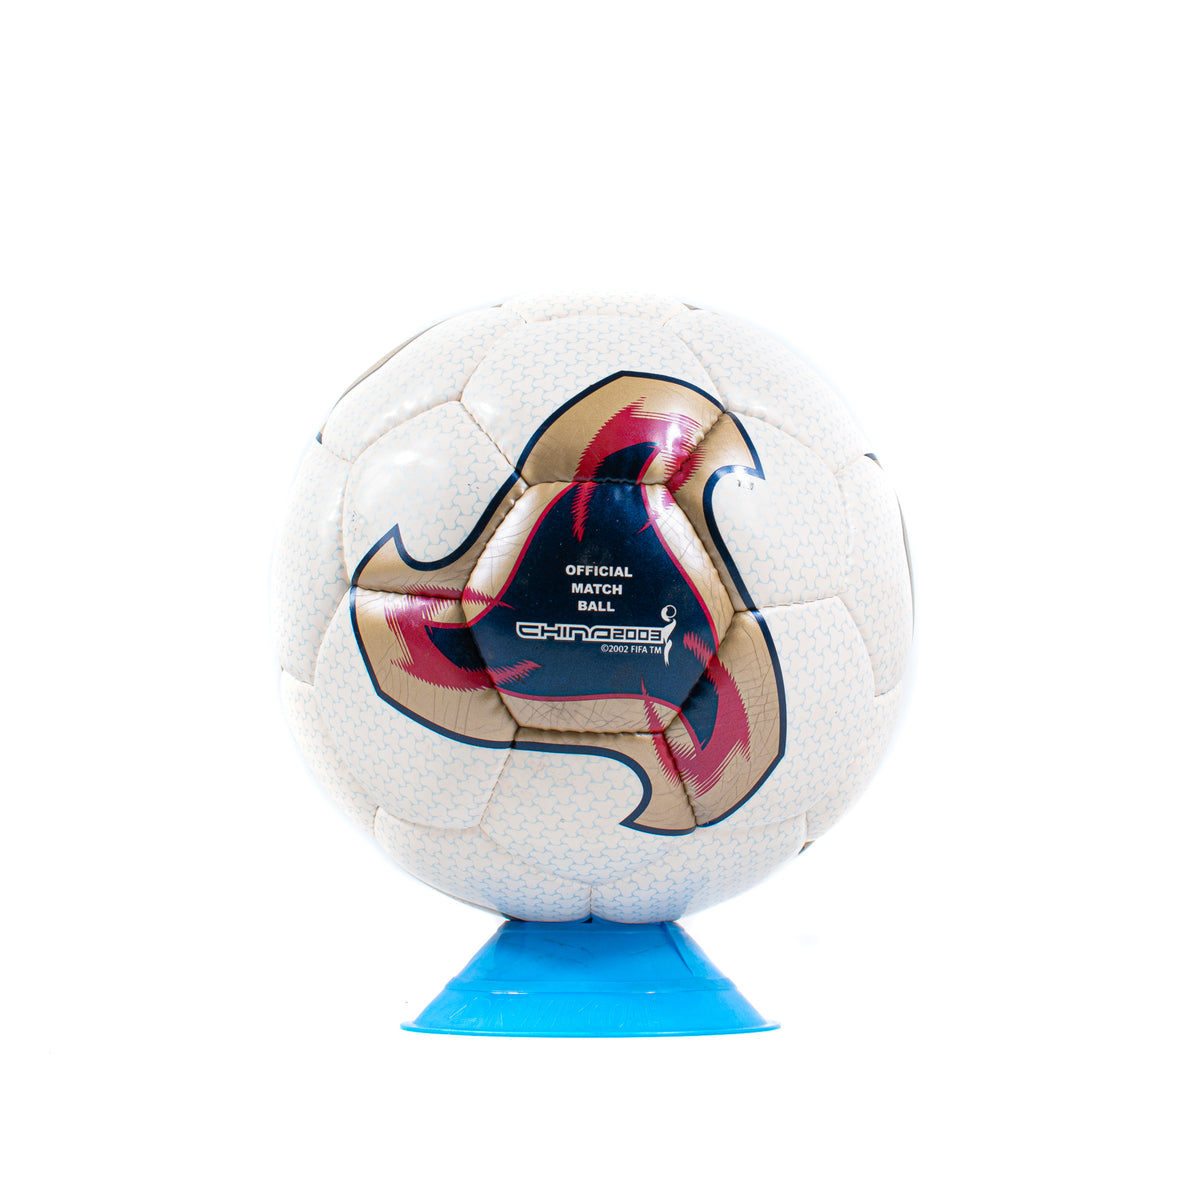 Adidas Fevernova Match Ball 2003 Women's World Cup – Classic